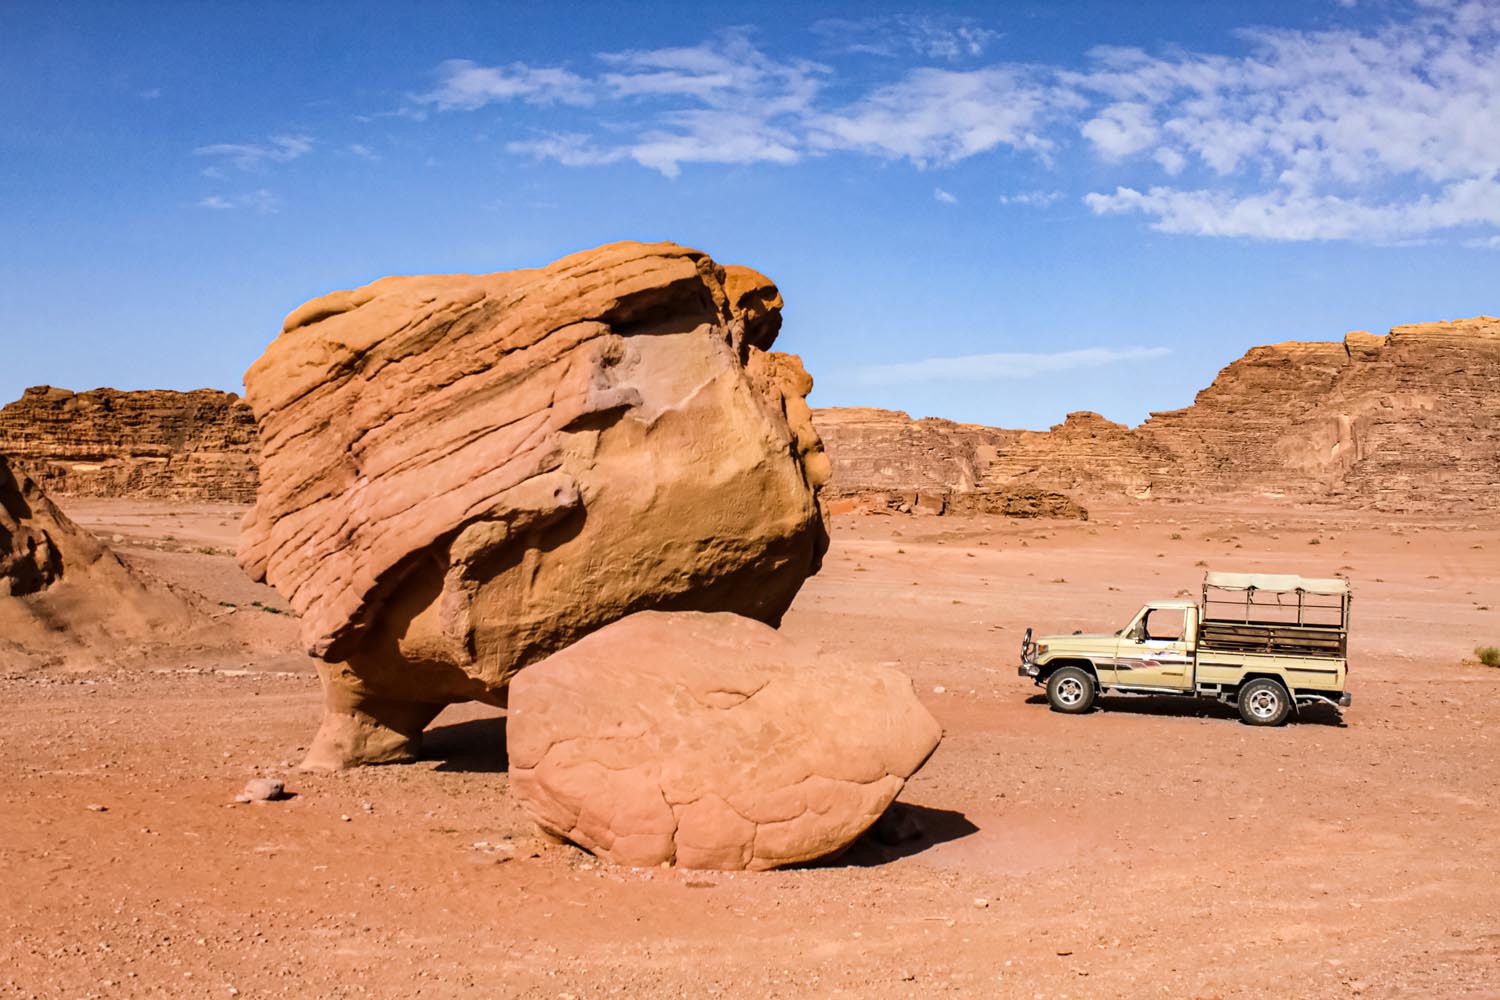 『月の谷』ワディラム砂漠にある顔の形をした大きな奇岩